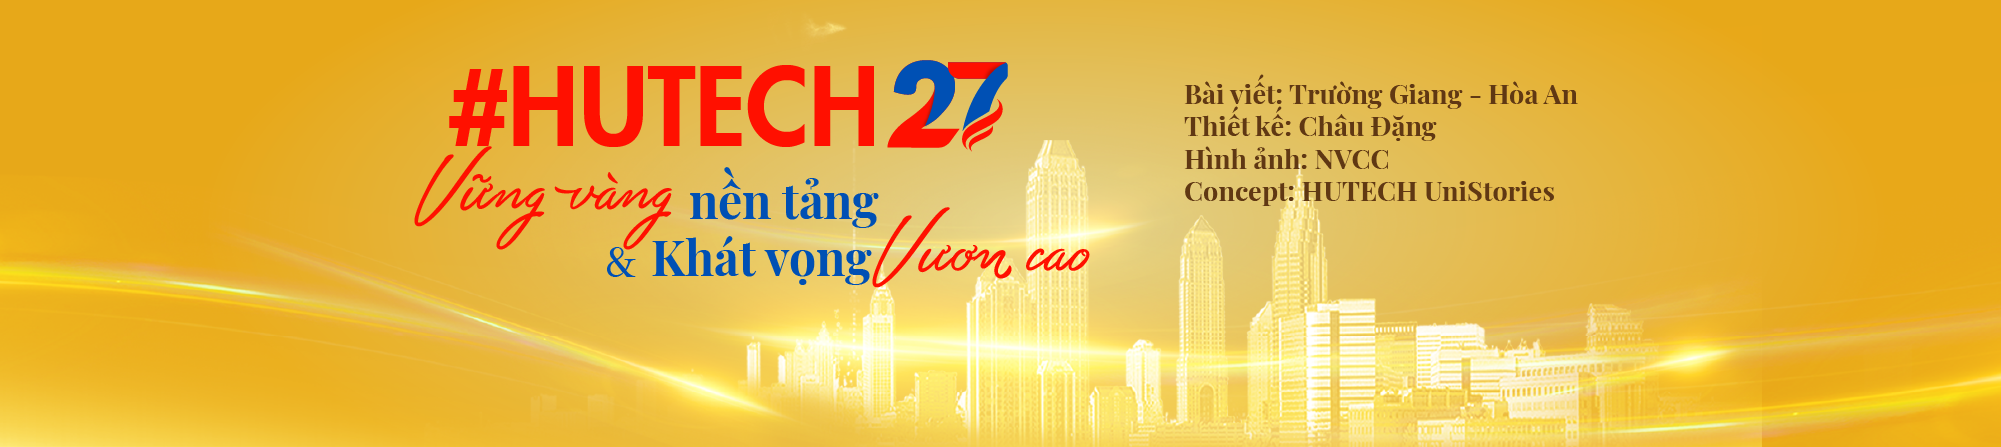 #HUTECH27: VỮNG VÀNG nền tảng & Khát vọng VƯƠN CAO 267